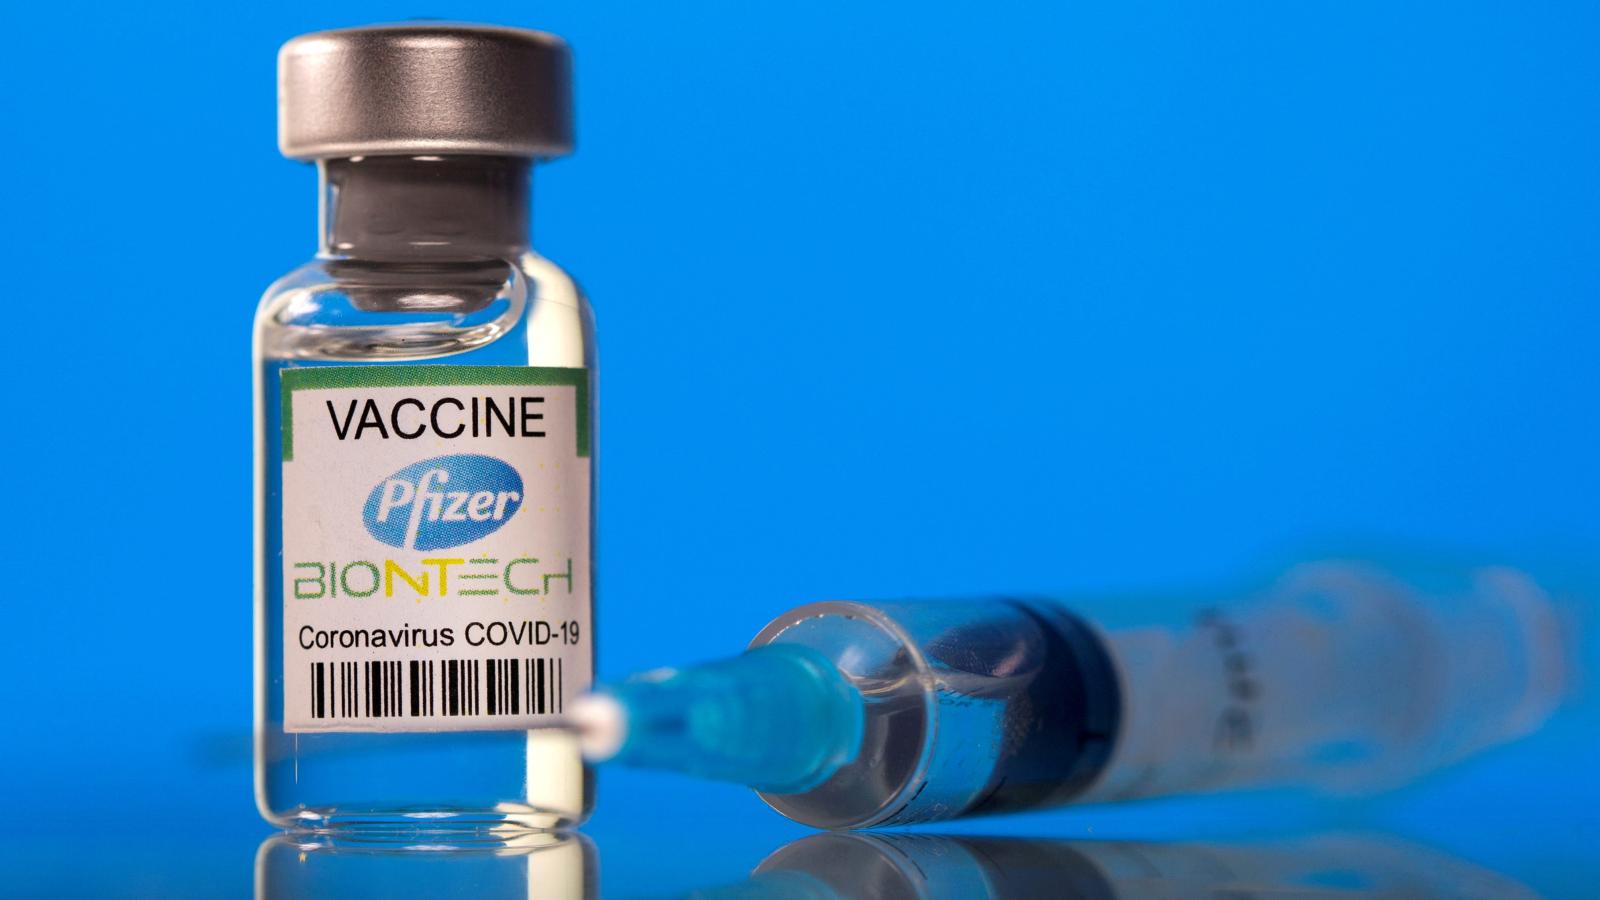 辉瑞和BioNTech的COVID-19疫苗<font color="red">Comirnaty</font>对青少年具有高度保护作用